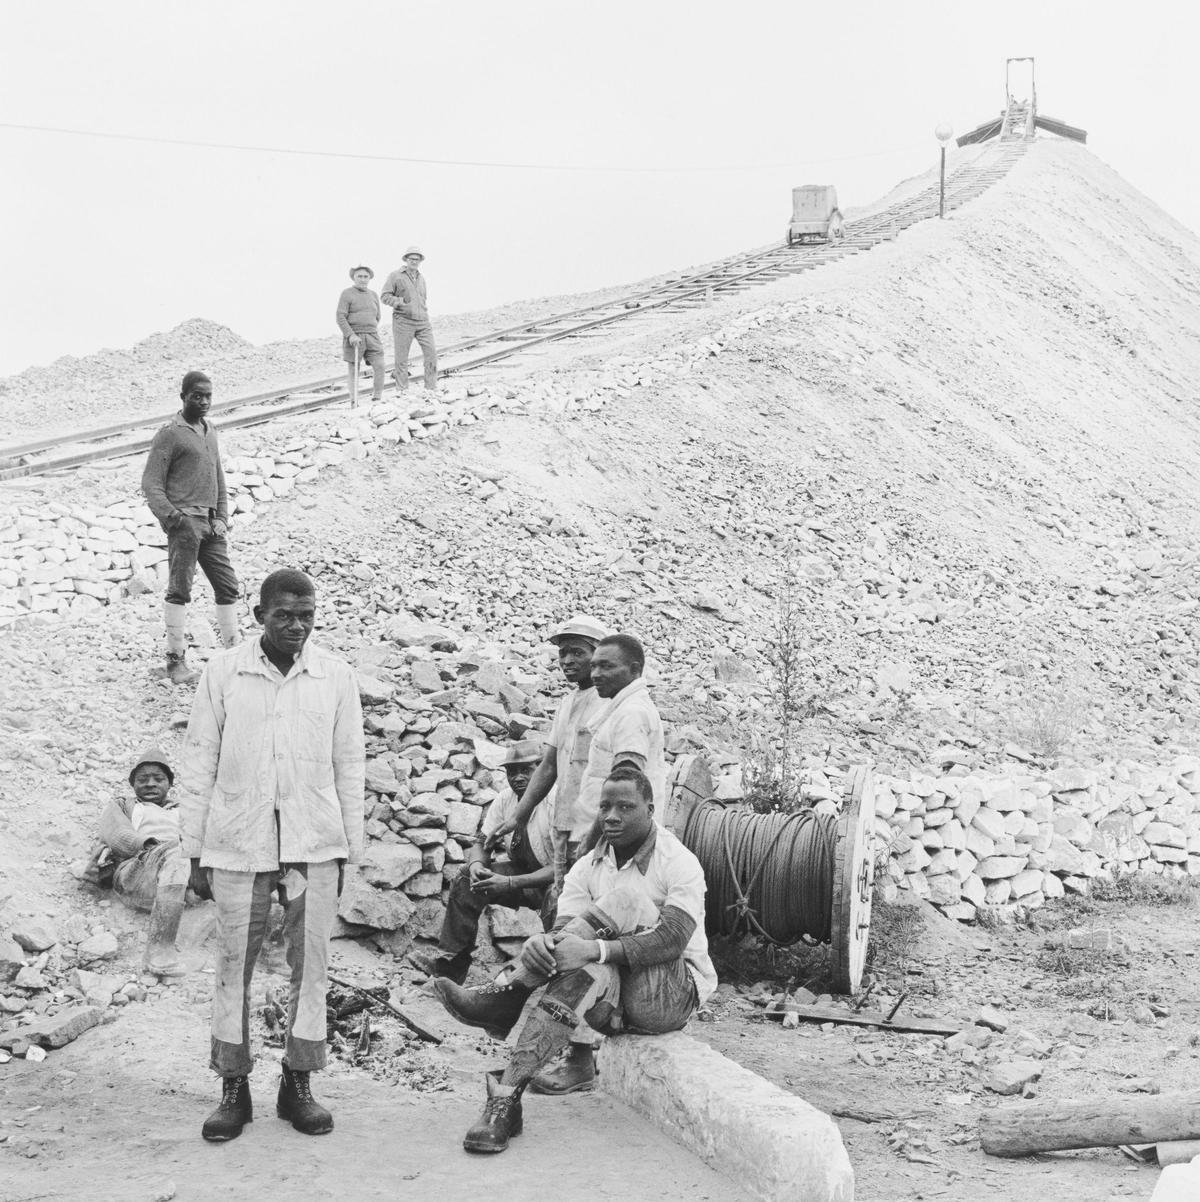 David Goldblatt, 'Gang on surface work, Rustenberg Platinum Mine, Rustenburg, North-West Province [Cuadrilla en trabajos de superficie, mina de platino de Rustenberg, Provincia del Noroeste], 1971.